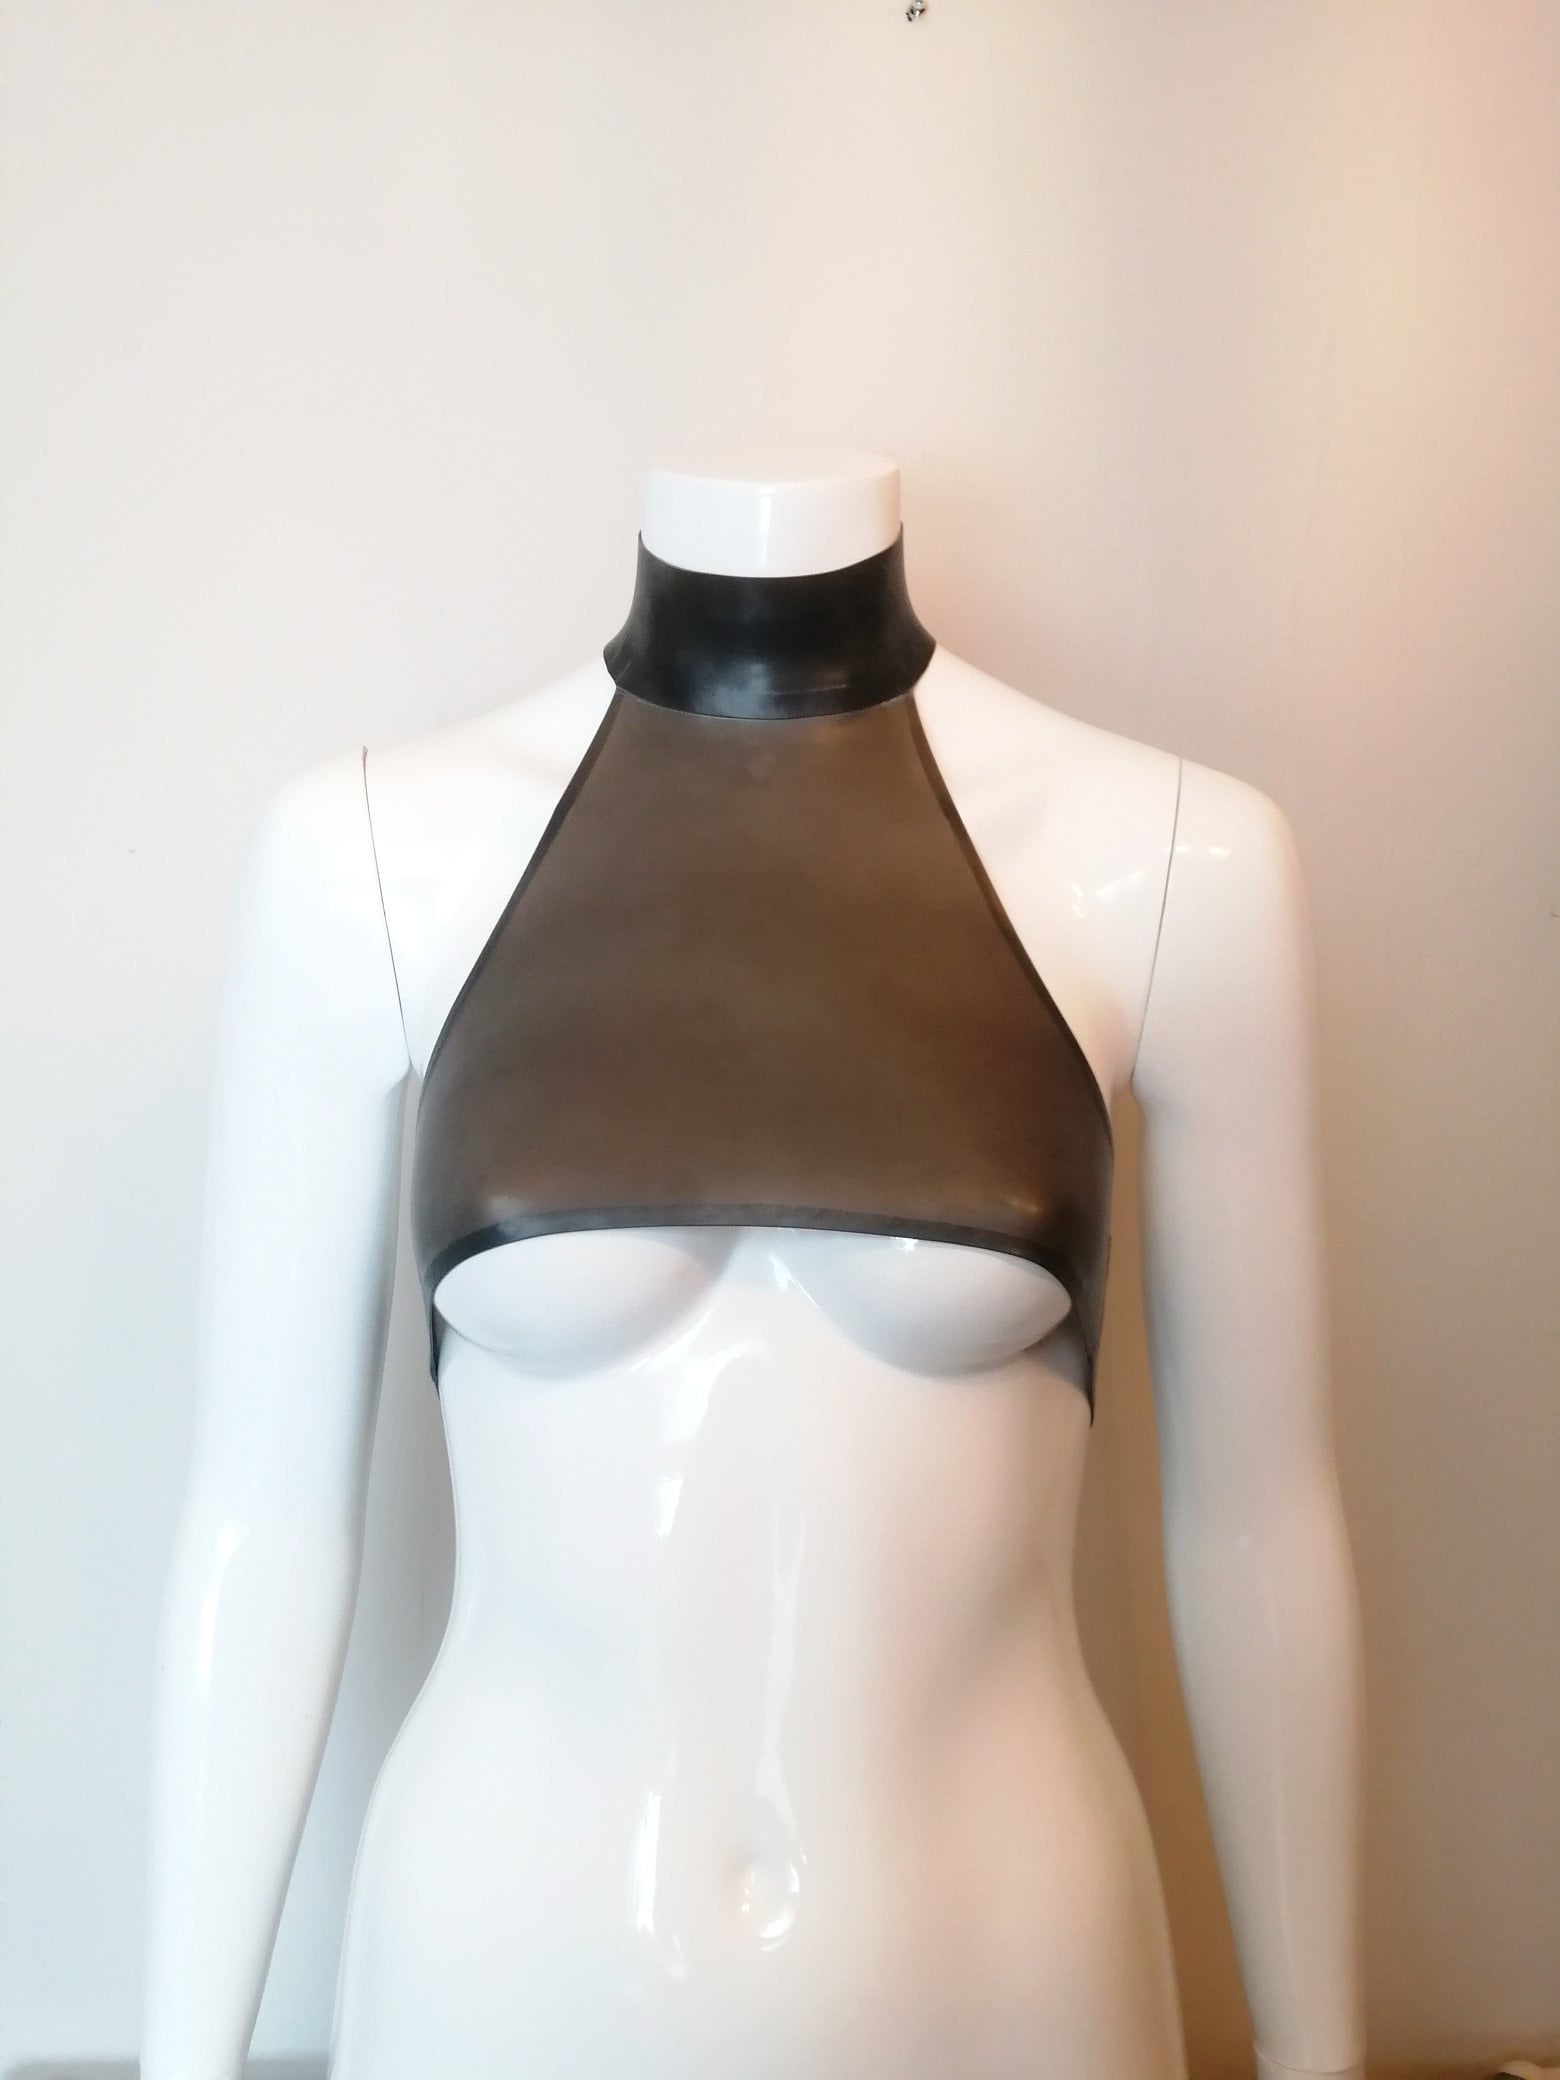 Women Creative Boobs Breast Chain Crop Top Slim Fit Round Neck T